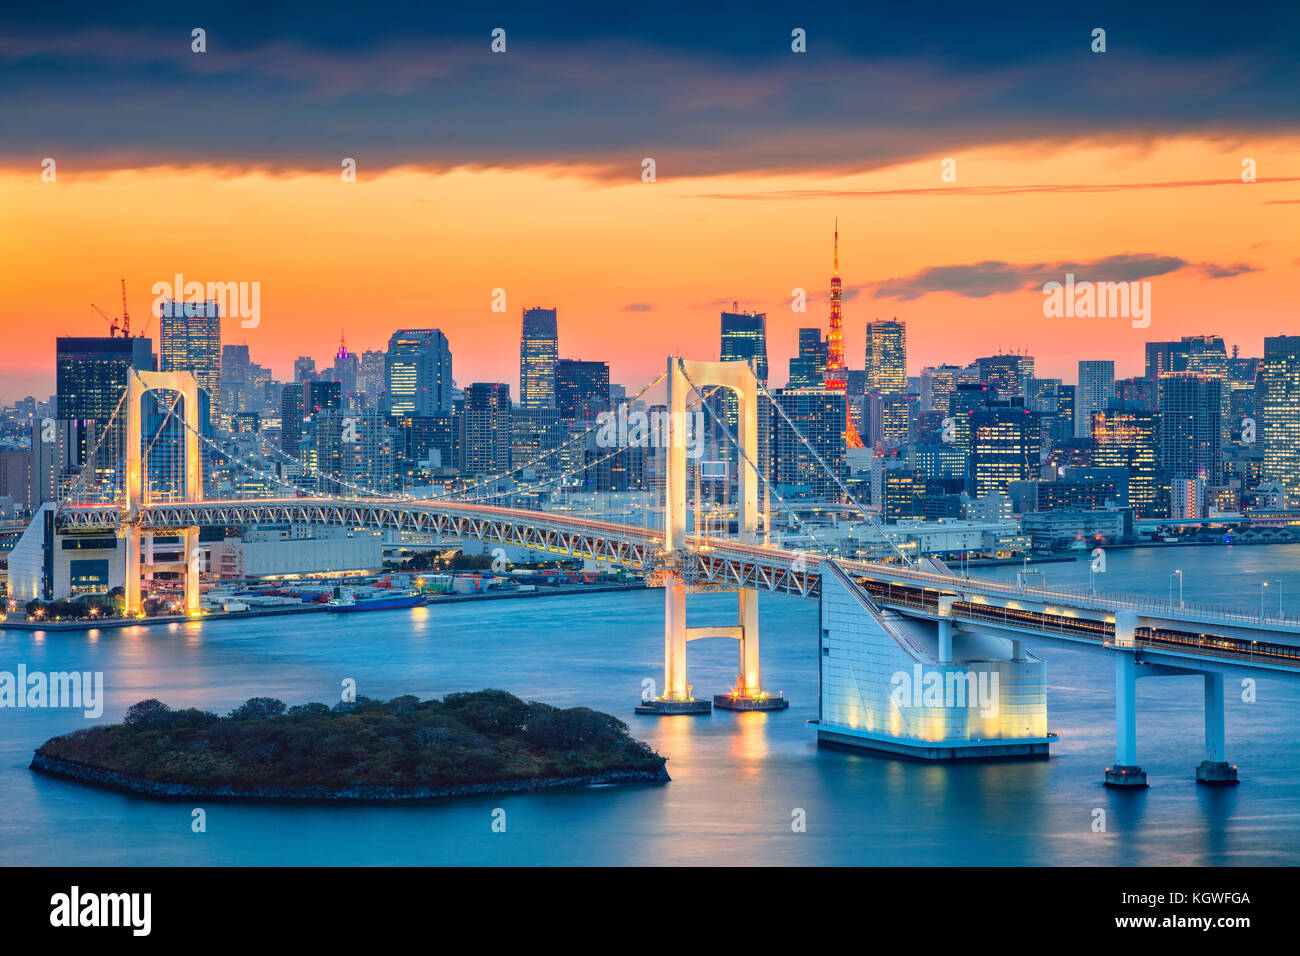 Tokio, Japan. Stadtbild von Tokio, Japan mit Regenbogenbrücke bei Sonnenuntergang. Stockfoto